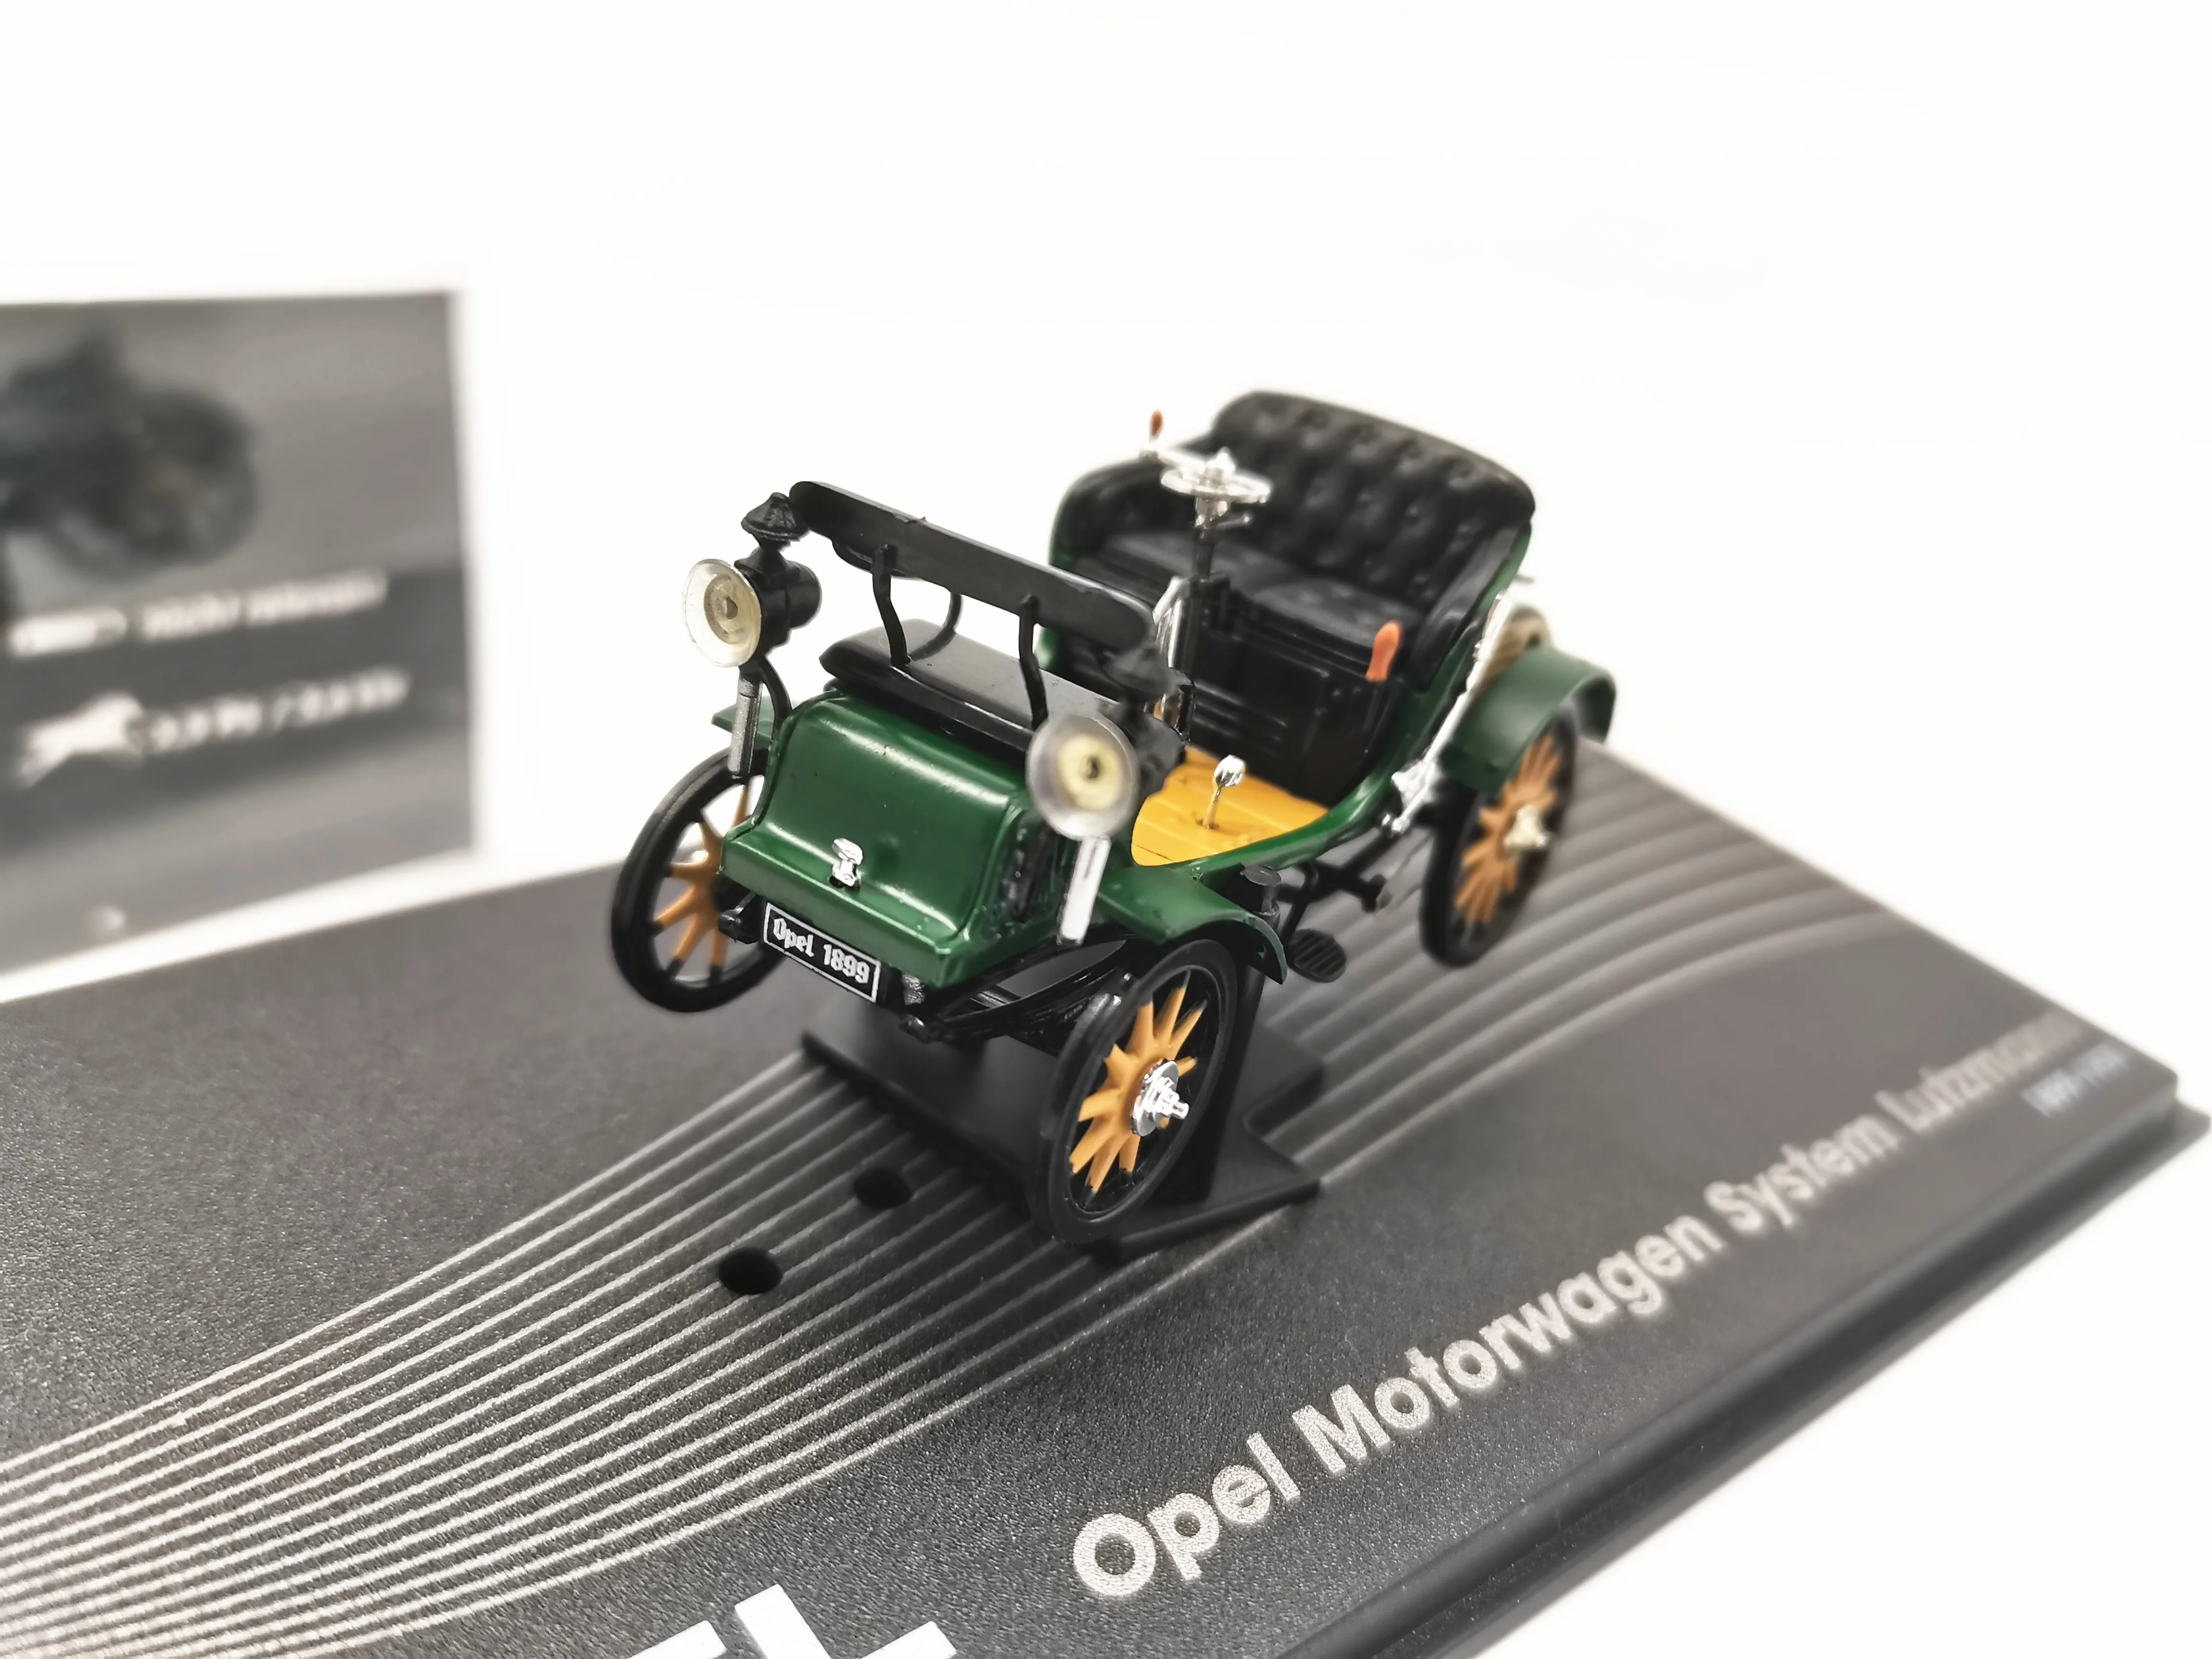 

1/43 Opel Motorwagen System Lutzmann 1989-1901